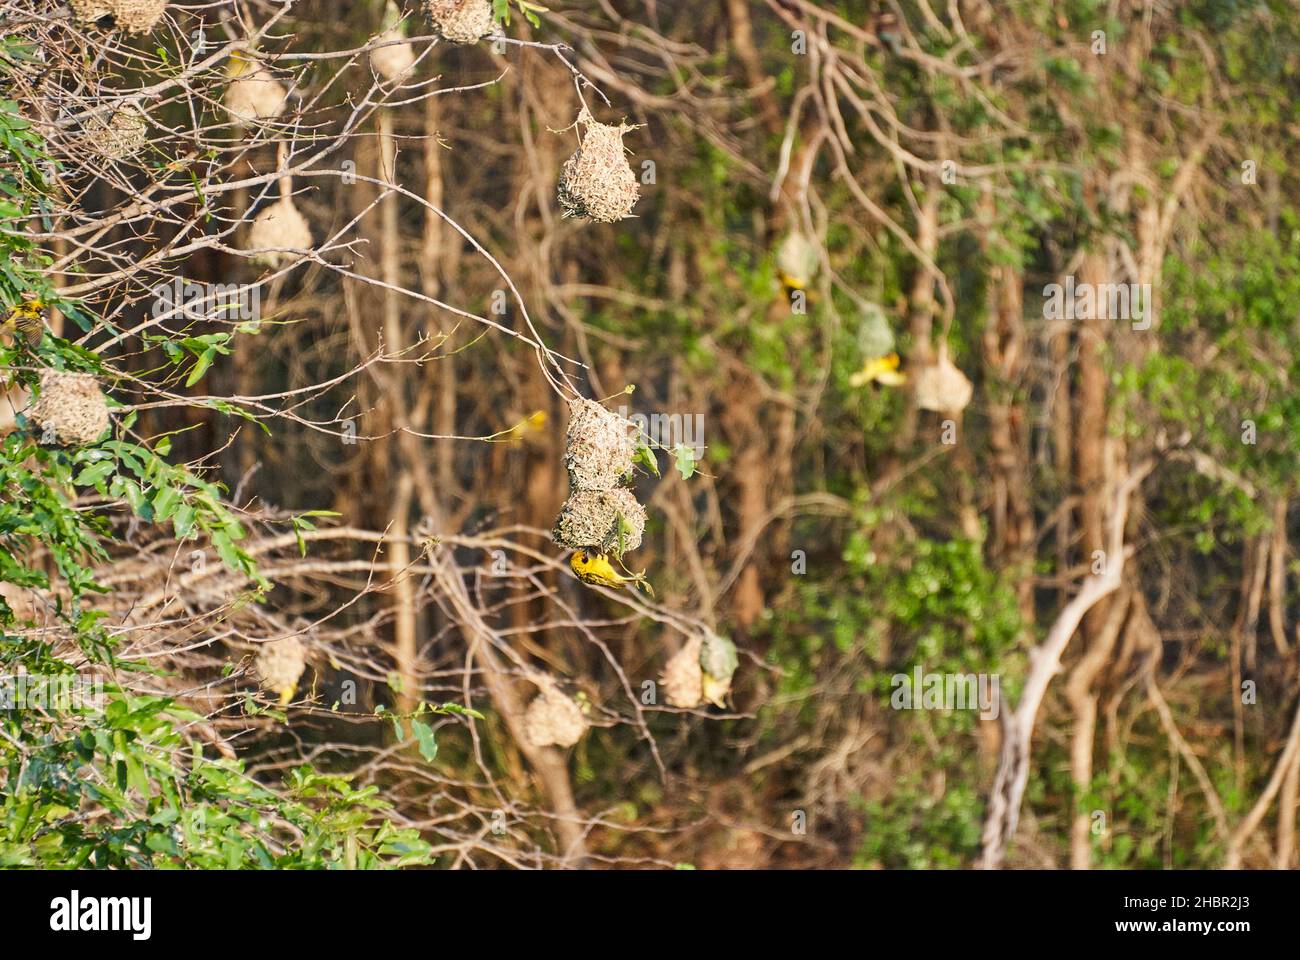 delicados nidos de aves tejedoras colgando en los arbustos de un paisaje africano Foto de stock